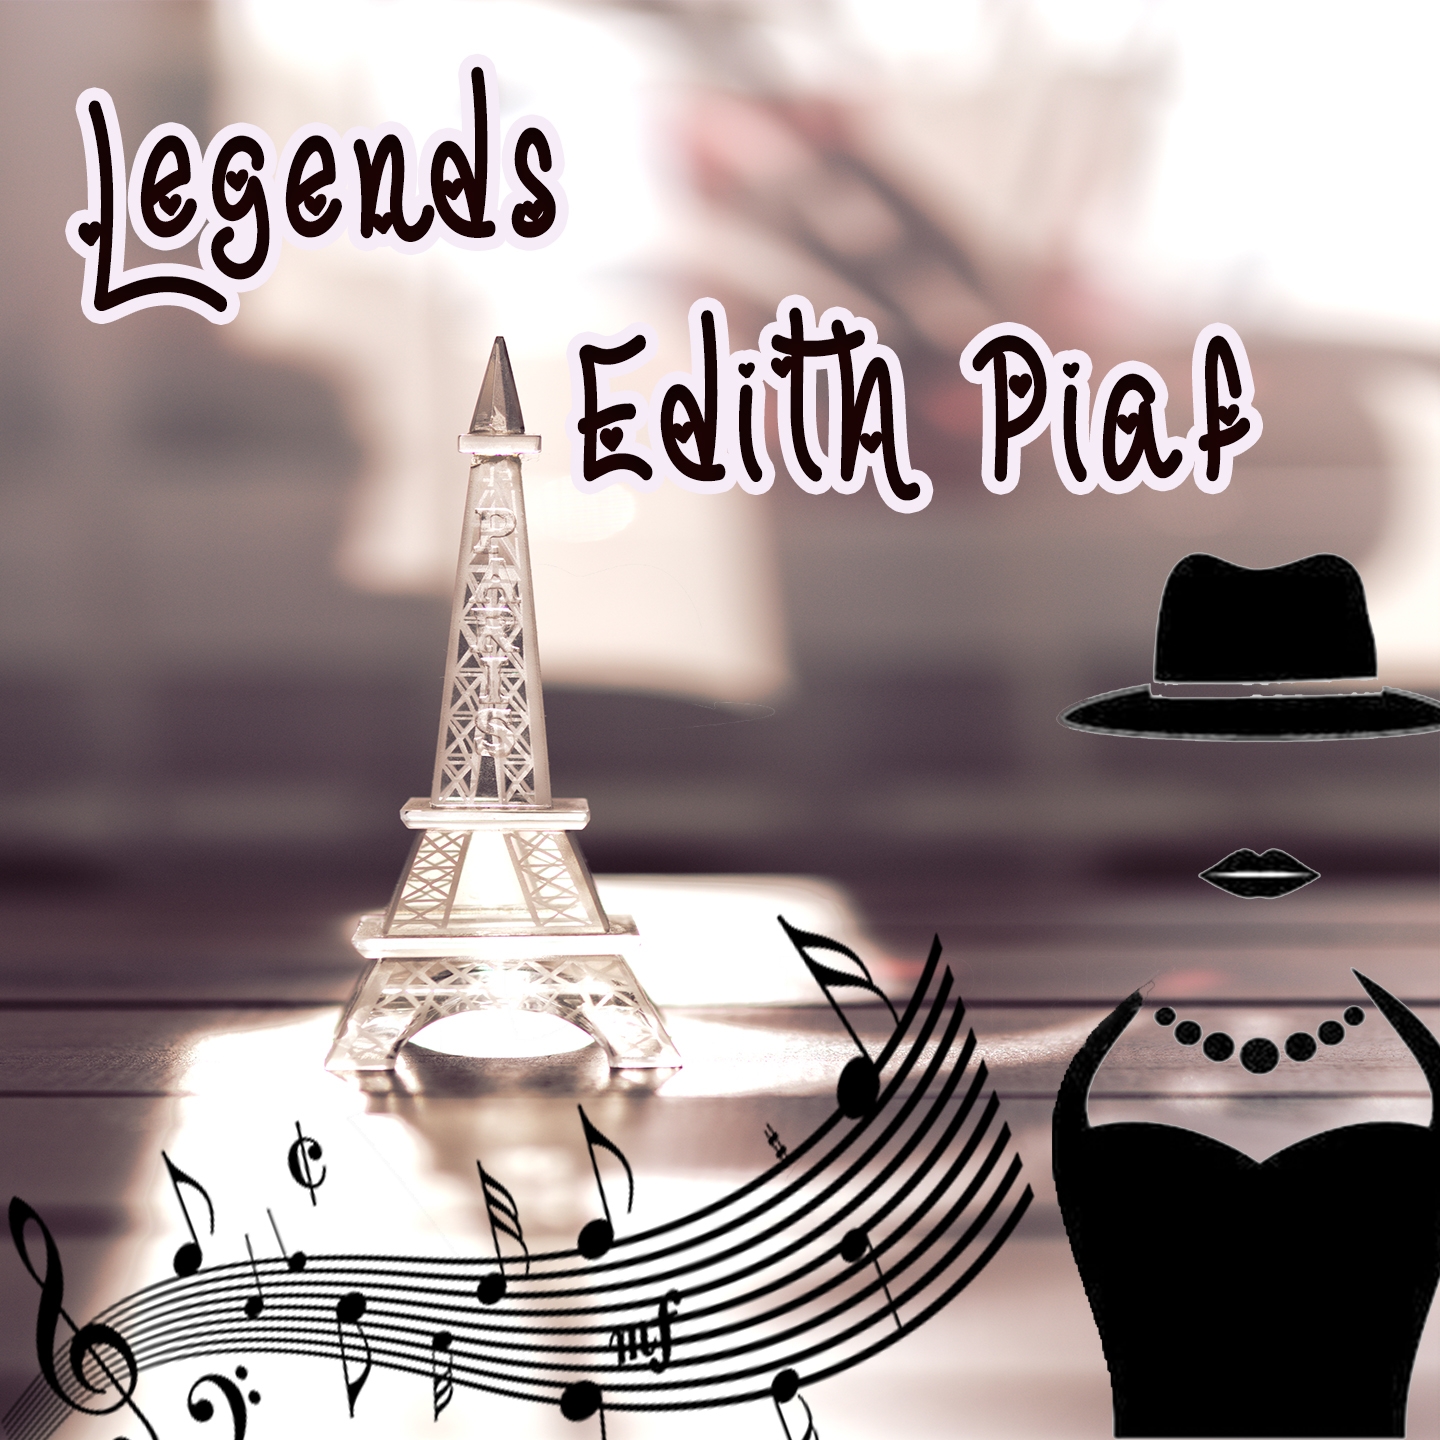 Legends : Edith Piaf